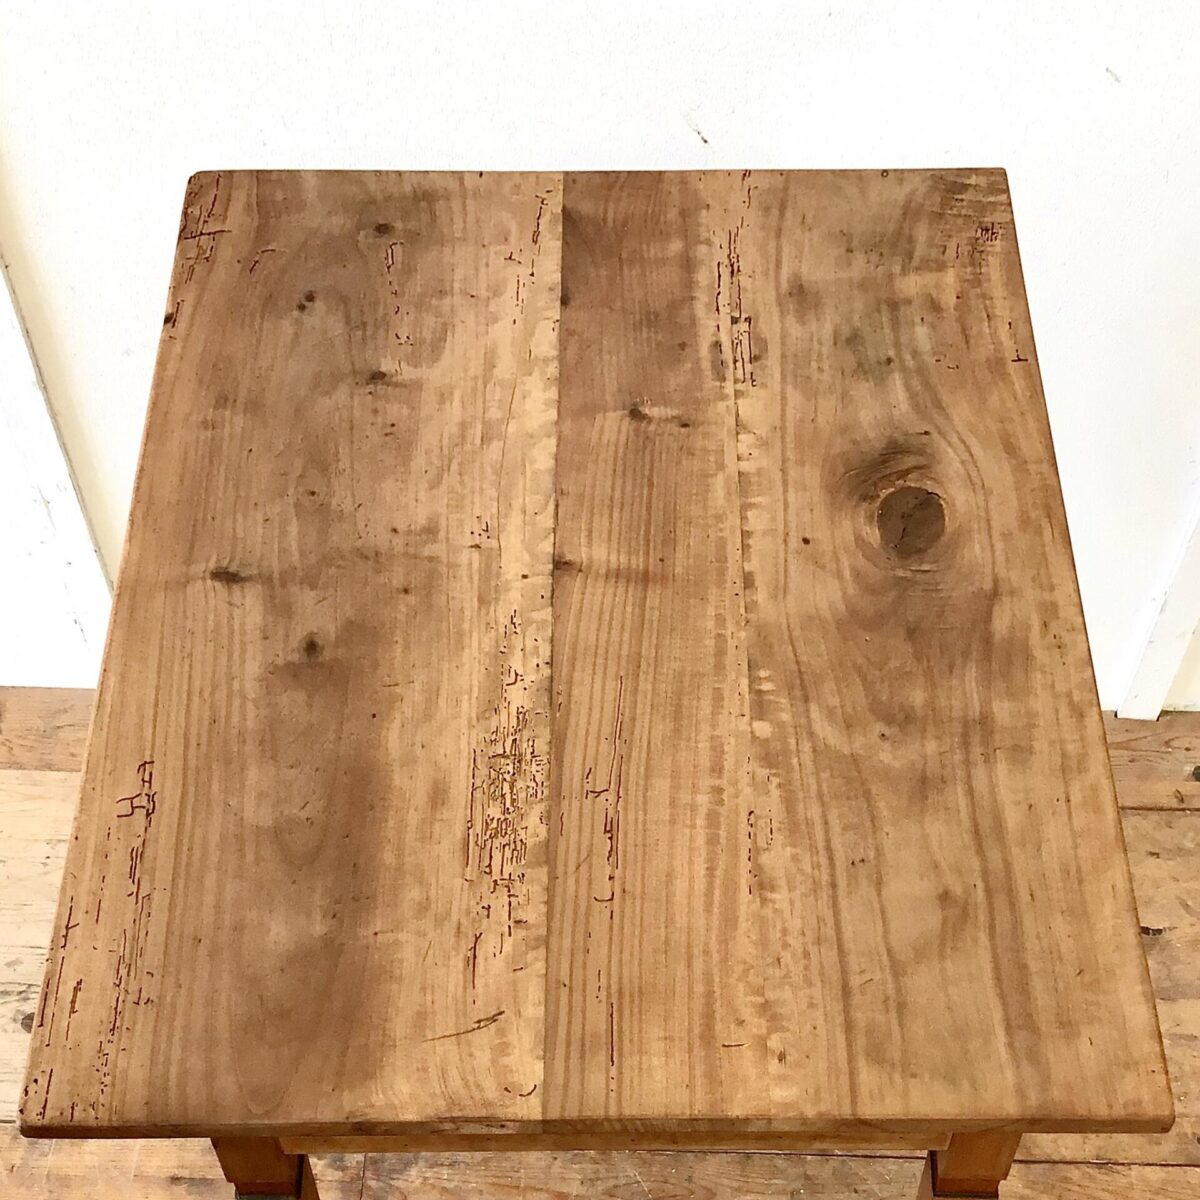 Kleiner Biedermeier Schreibtisch mit Schublade aus Nussbaumholz. 88.5x61.5cm Höhe 74.5cm. Der Tisch hat deutliche Altersspuren wie das leicht unebene Tischblatt mit Wurmlöchern und Alterspatina. Oder die abgebrochenen Ecken der Schubladenfront. Die Beine sind frisch verleimt und wieder stabil. Die Holz Oberflächen sind komplett geschliffen und mit Naturöl behandelt.